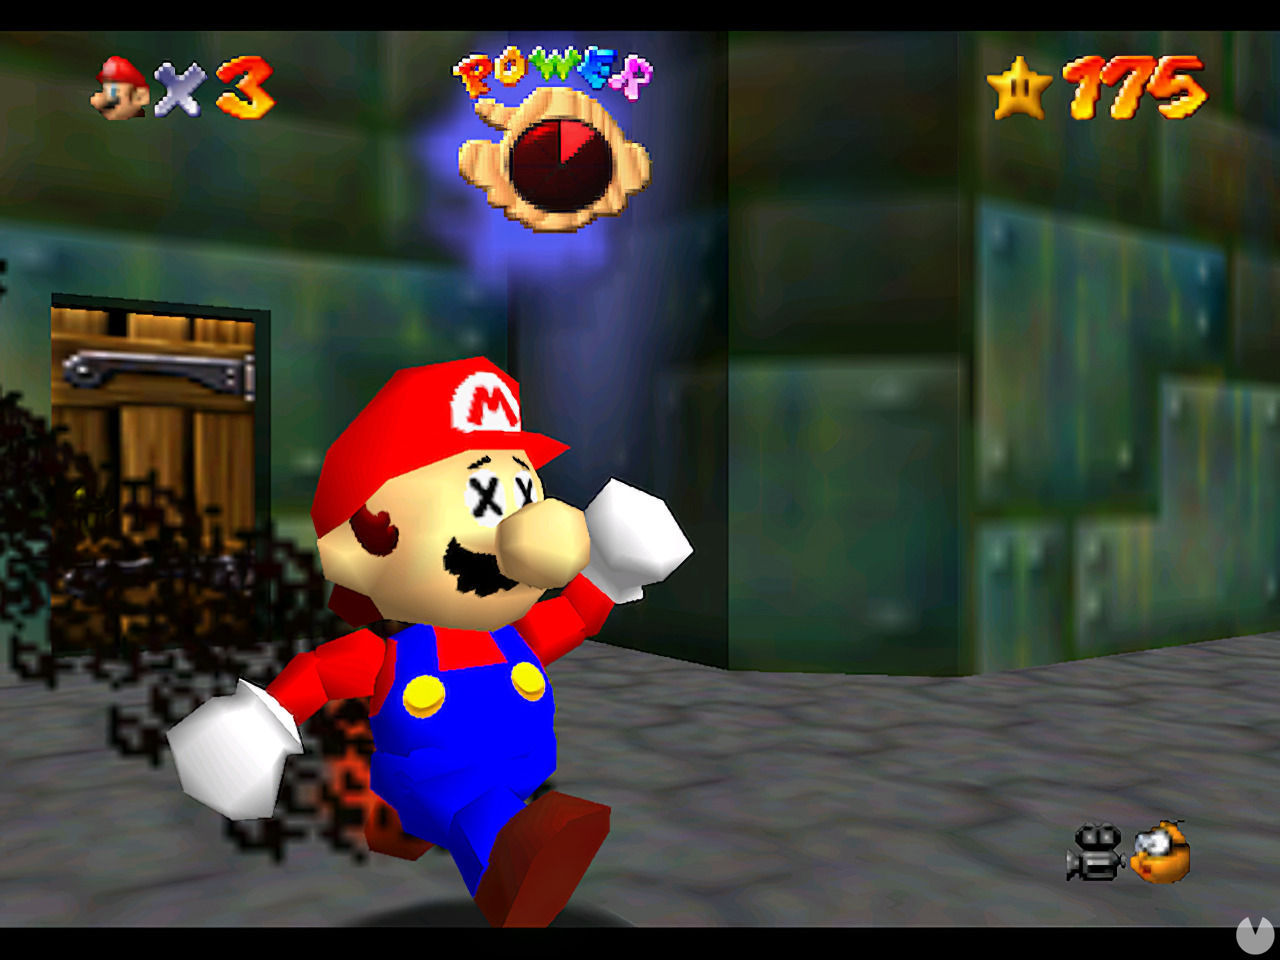 Por qu empiezo siempre con 4 vidas en Super Mario 64? - Super Mario 3D All-Stars